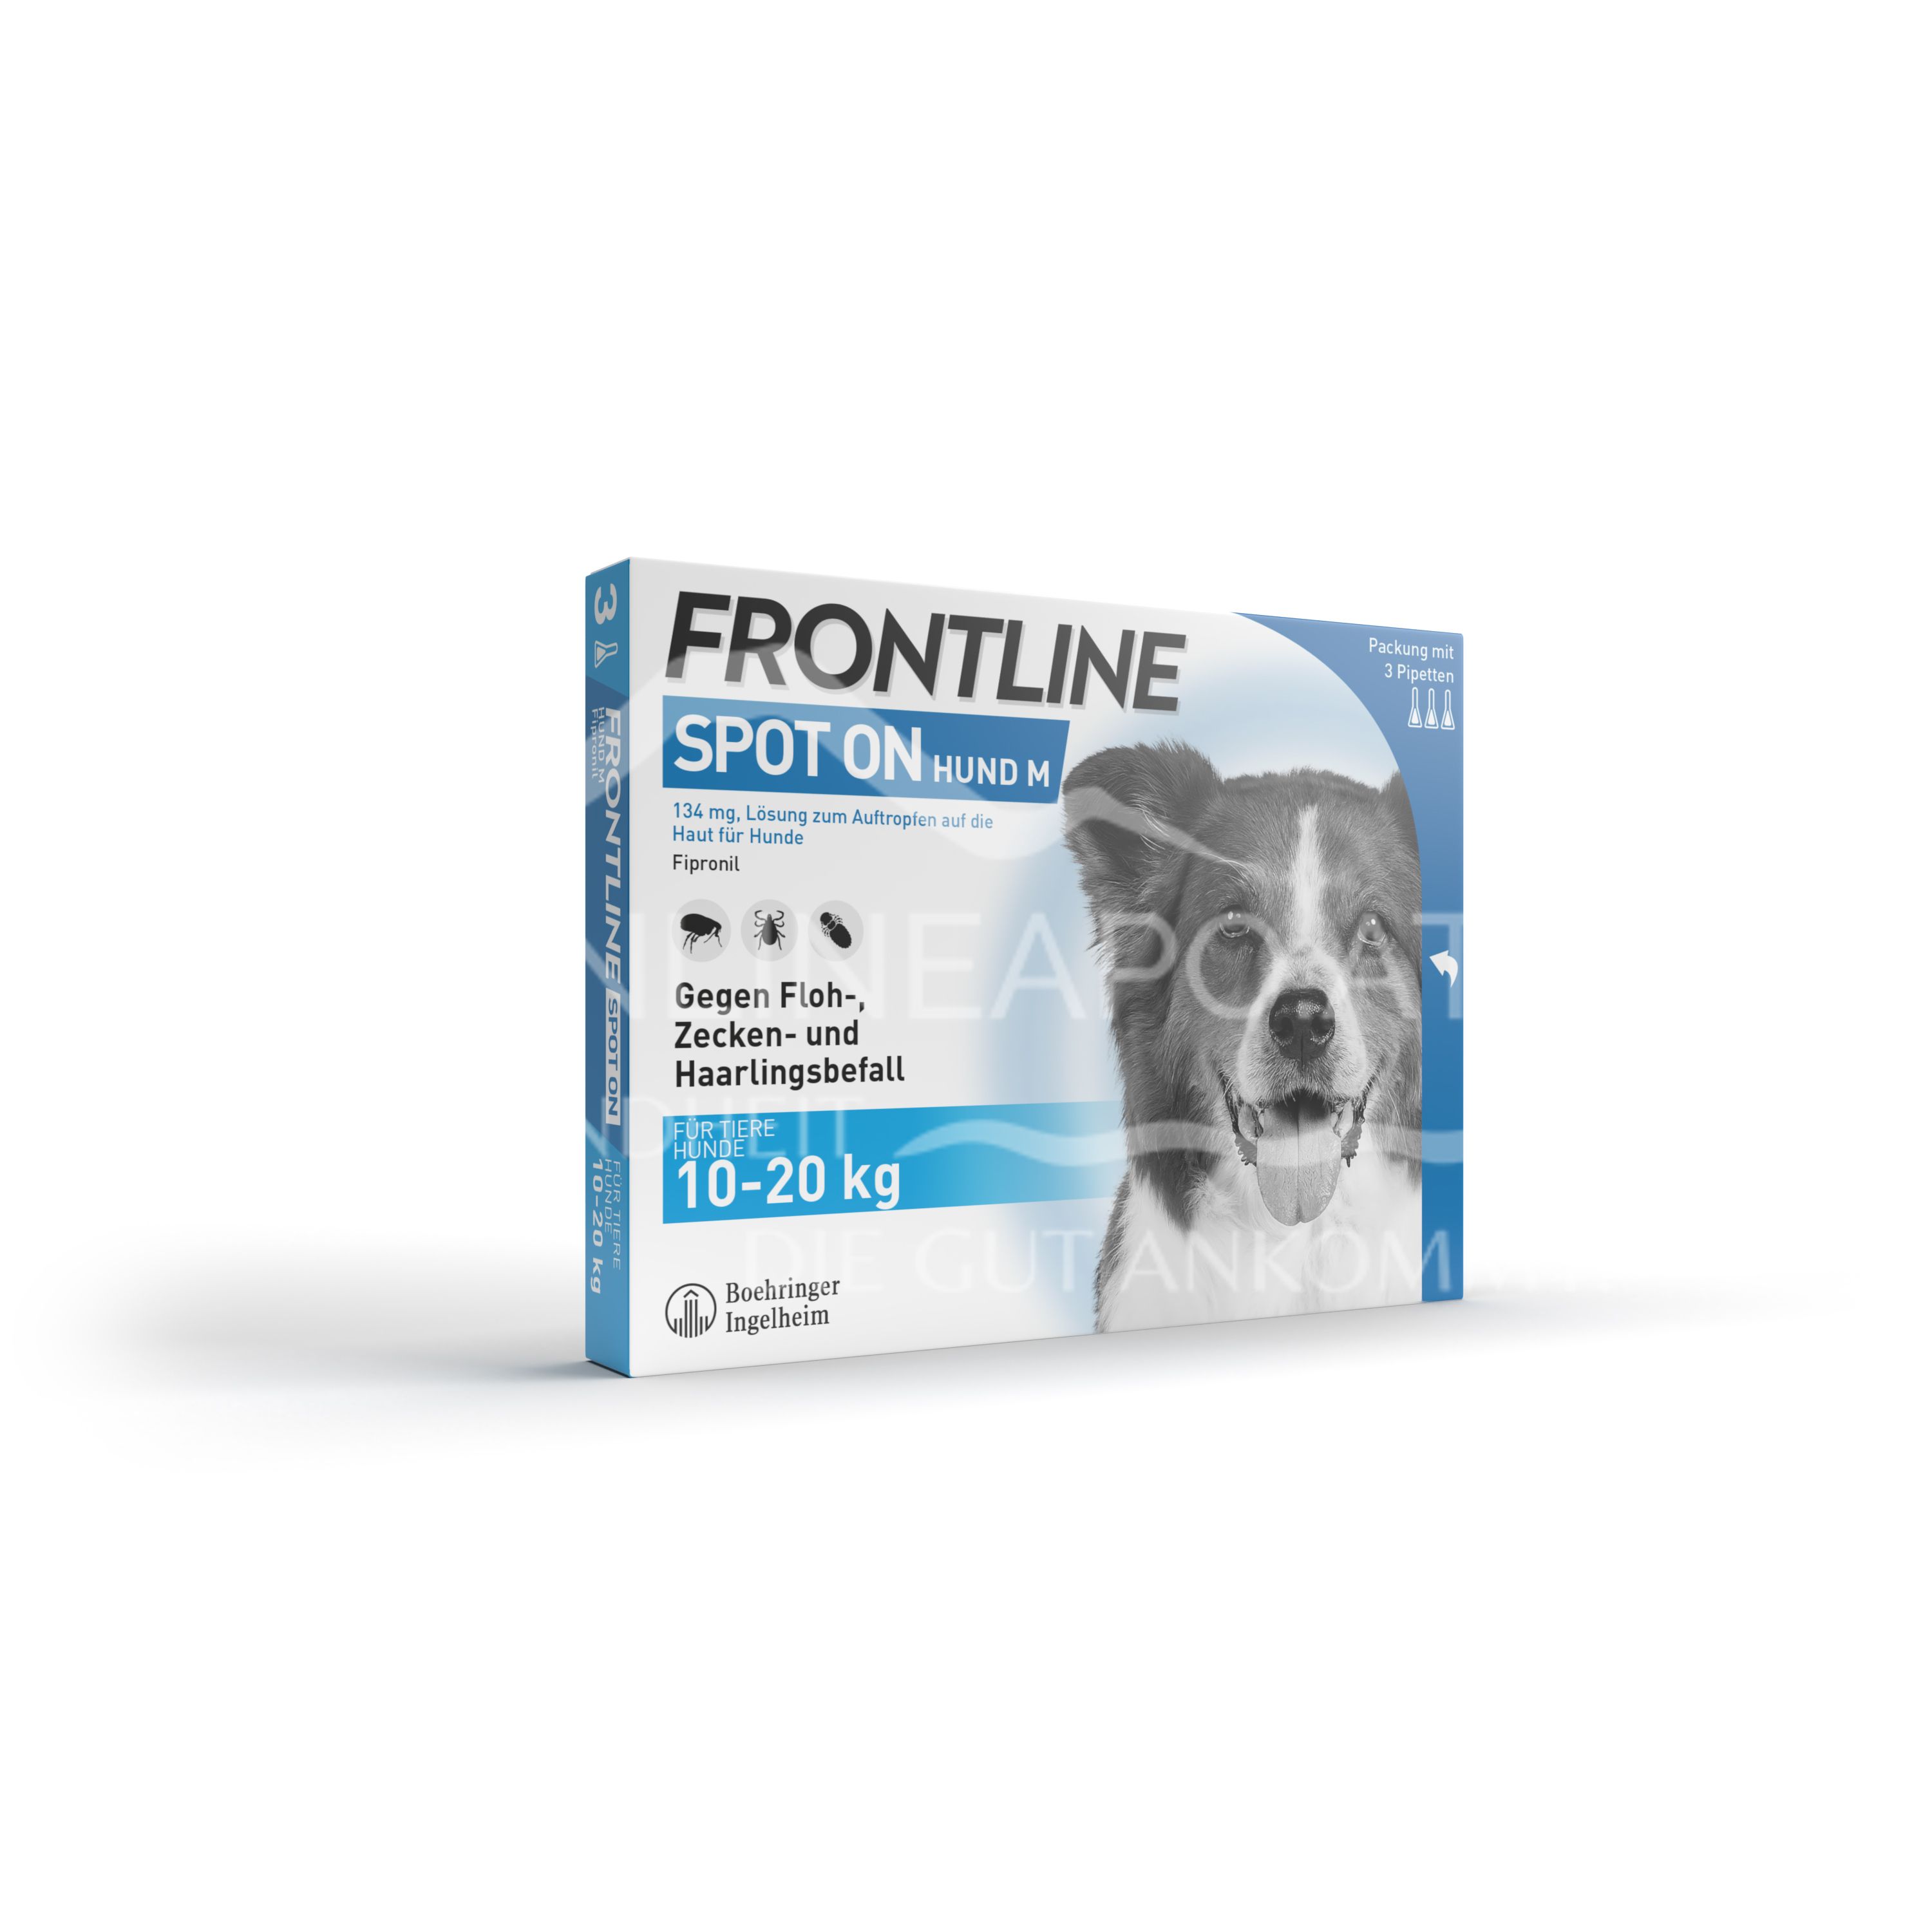 Frontline Spot-on für Mittelgroße Hunde 134 mg Lösung zum Auftropfen auf die Haut